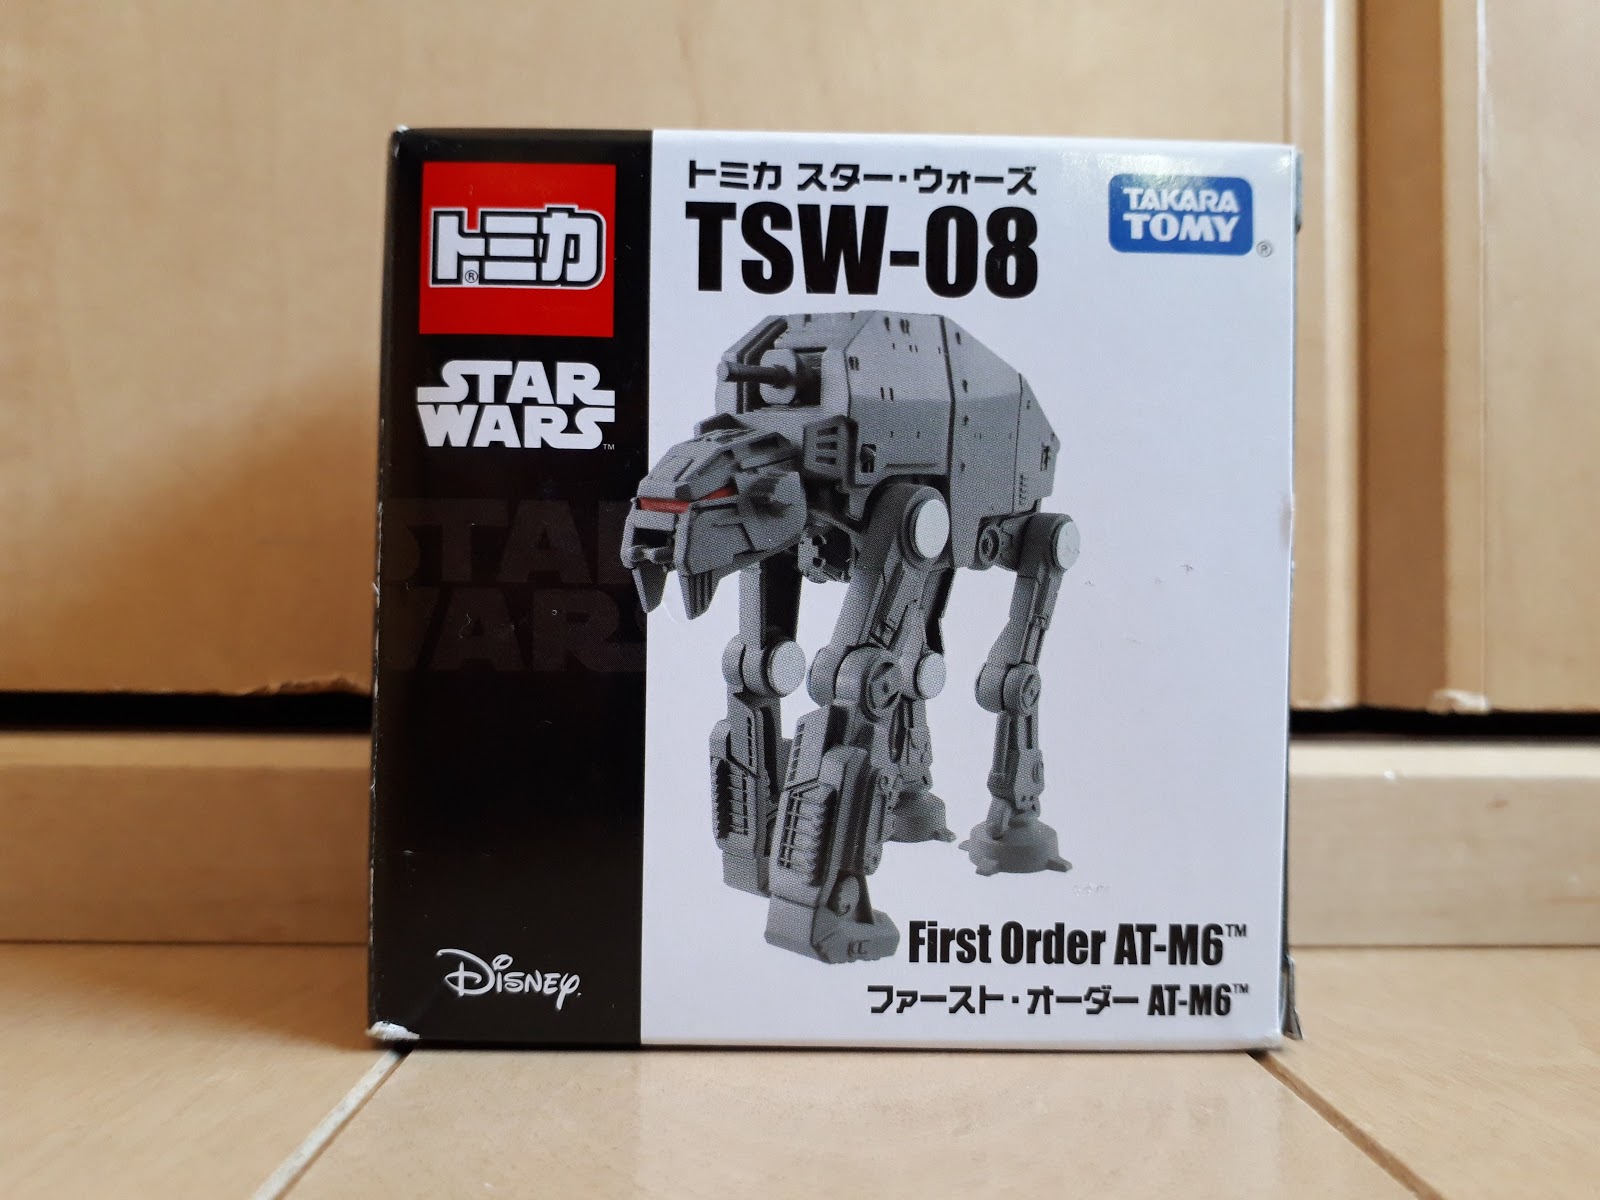 Takara Tomy Tomica TSW-08 Disney Star Wars erste Bestellung AT-M6 Diecast Mini 